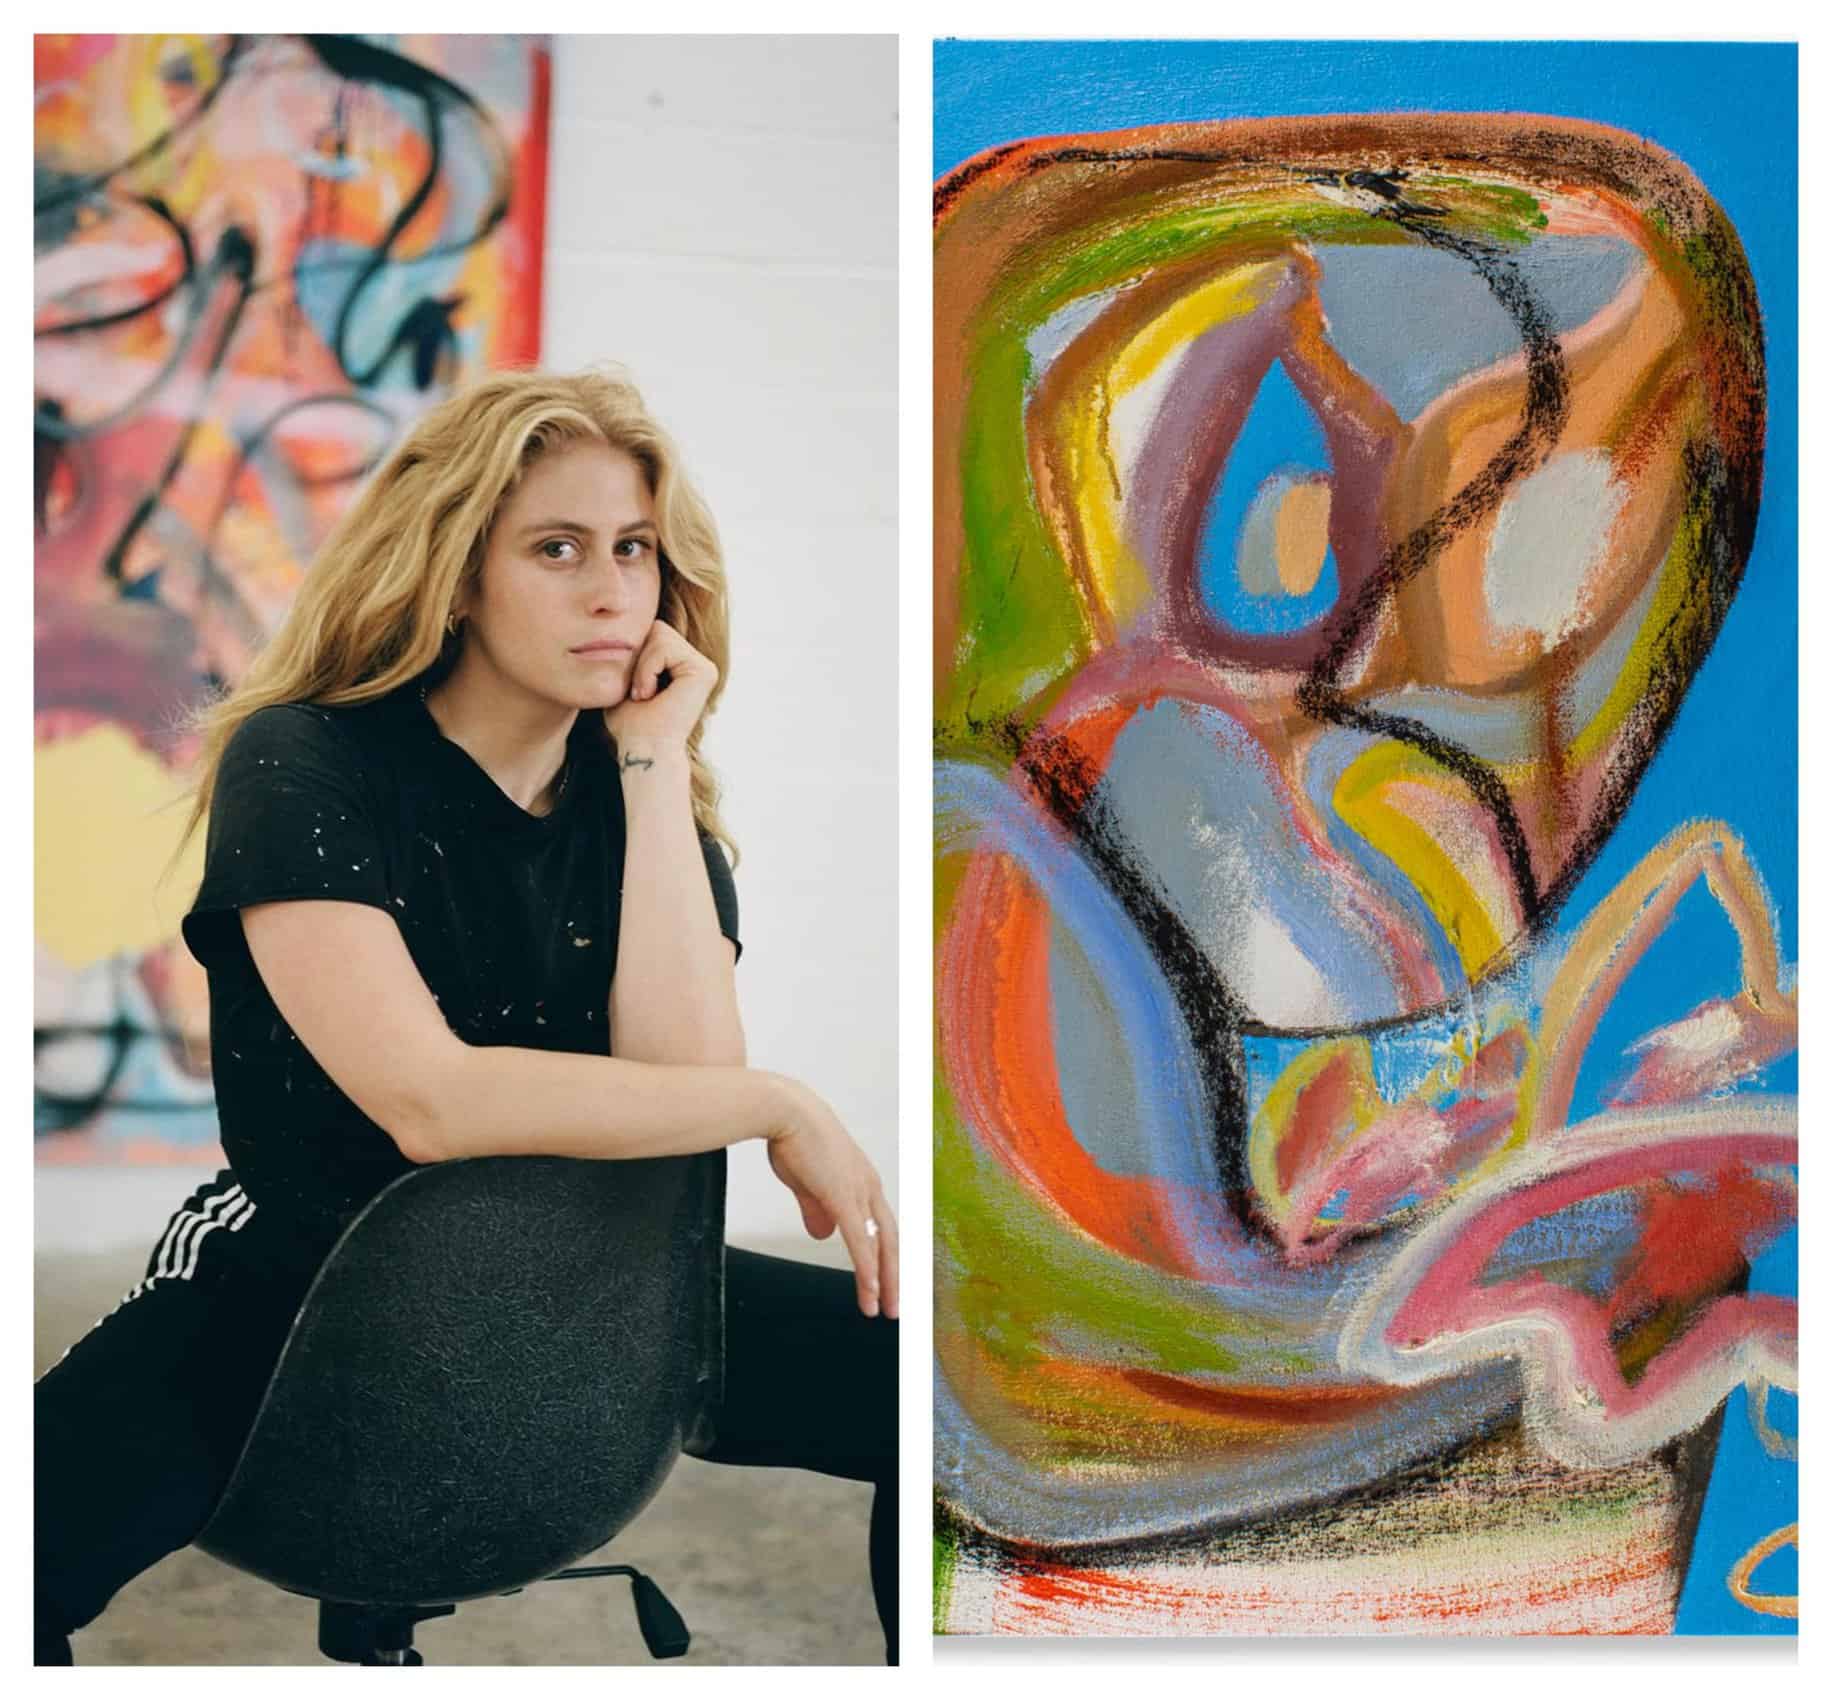 Meet Rising Art Star Austyn Weiner